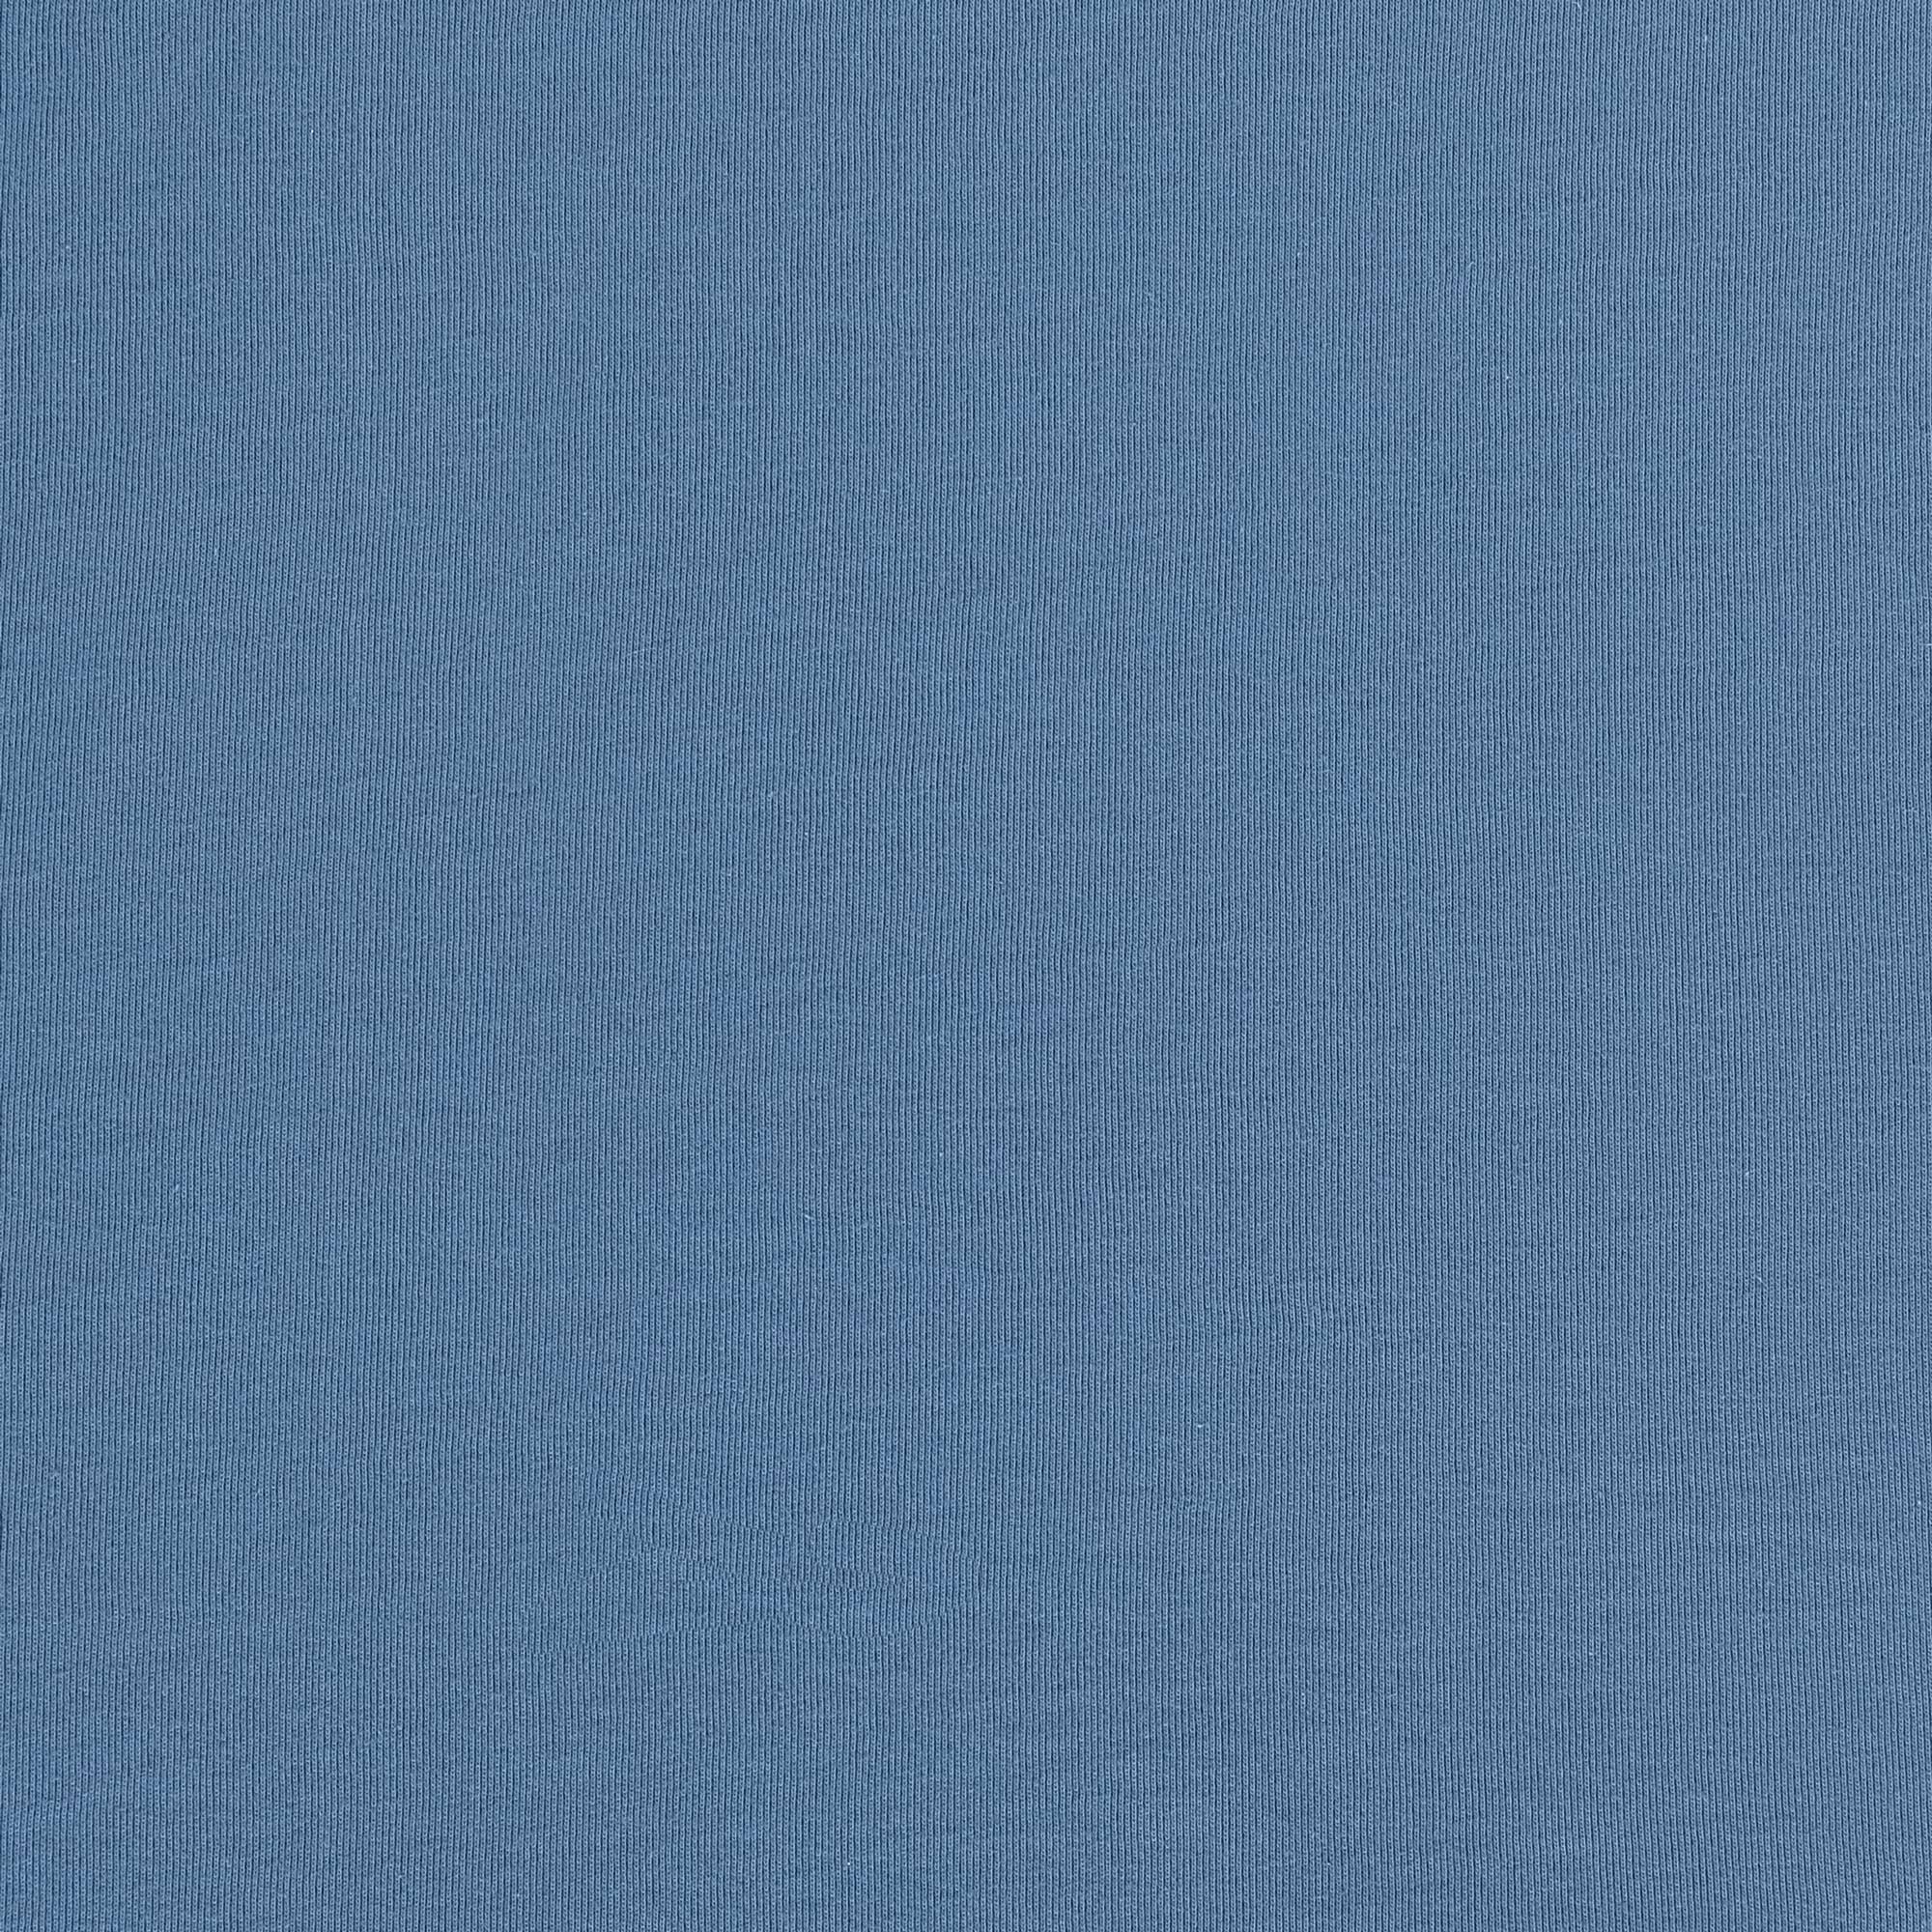 Рубашка мужская Diva Teks поло голубая, цвет голубой, размер 2XL - фото 6